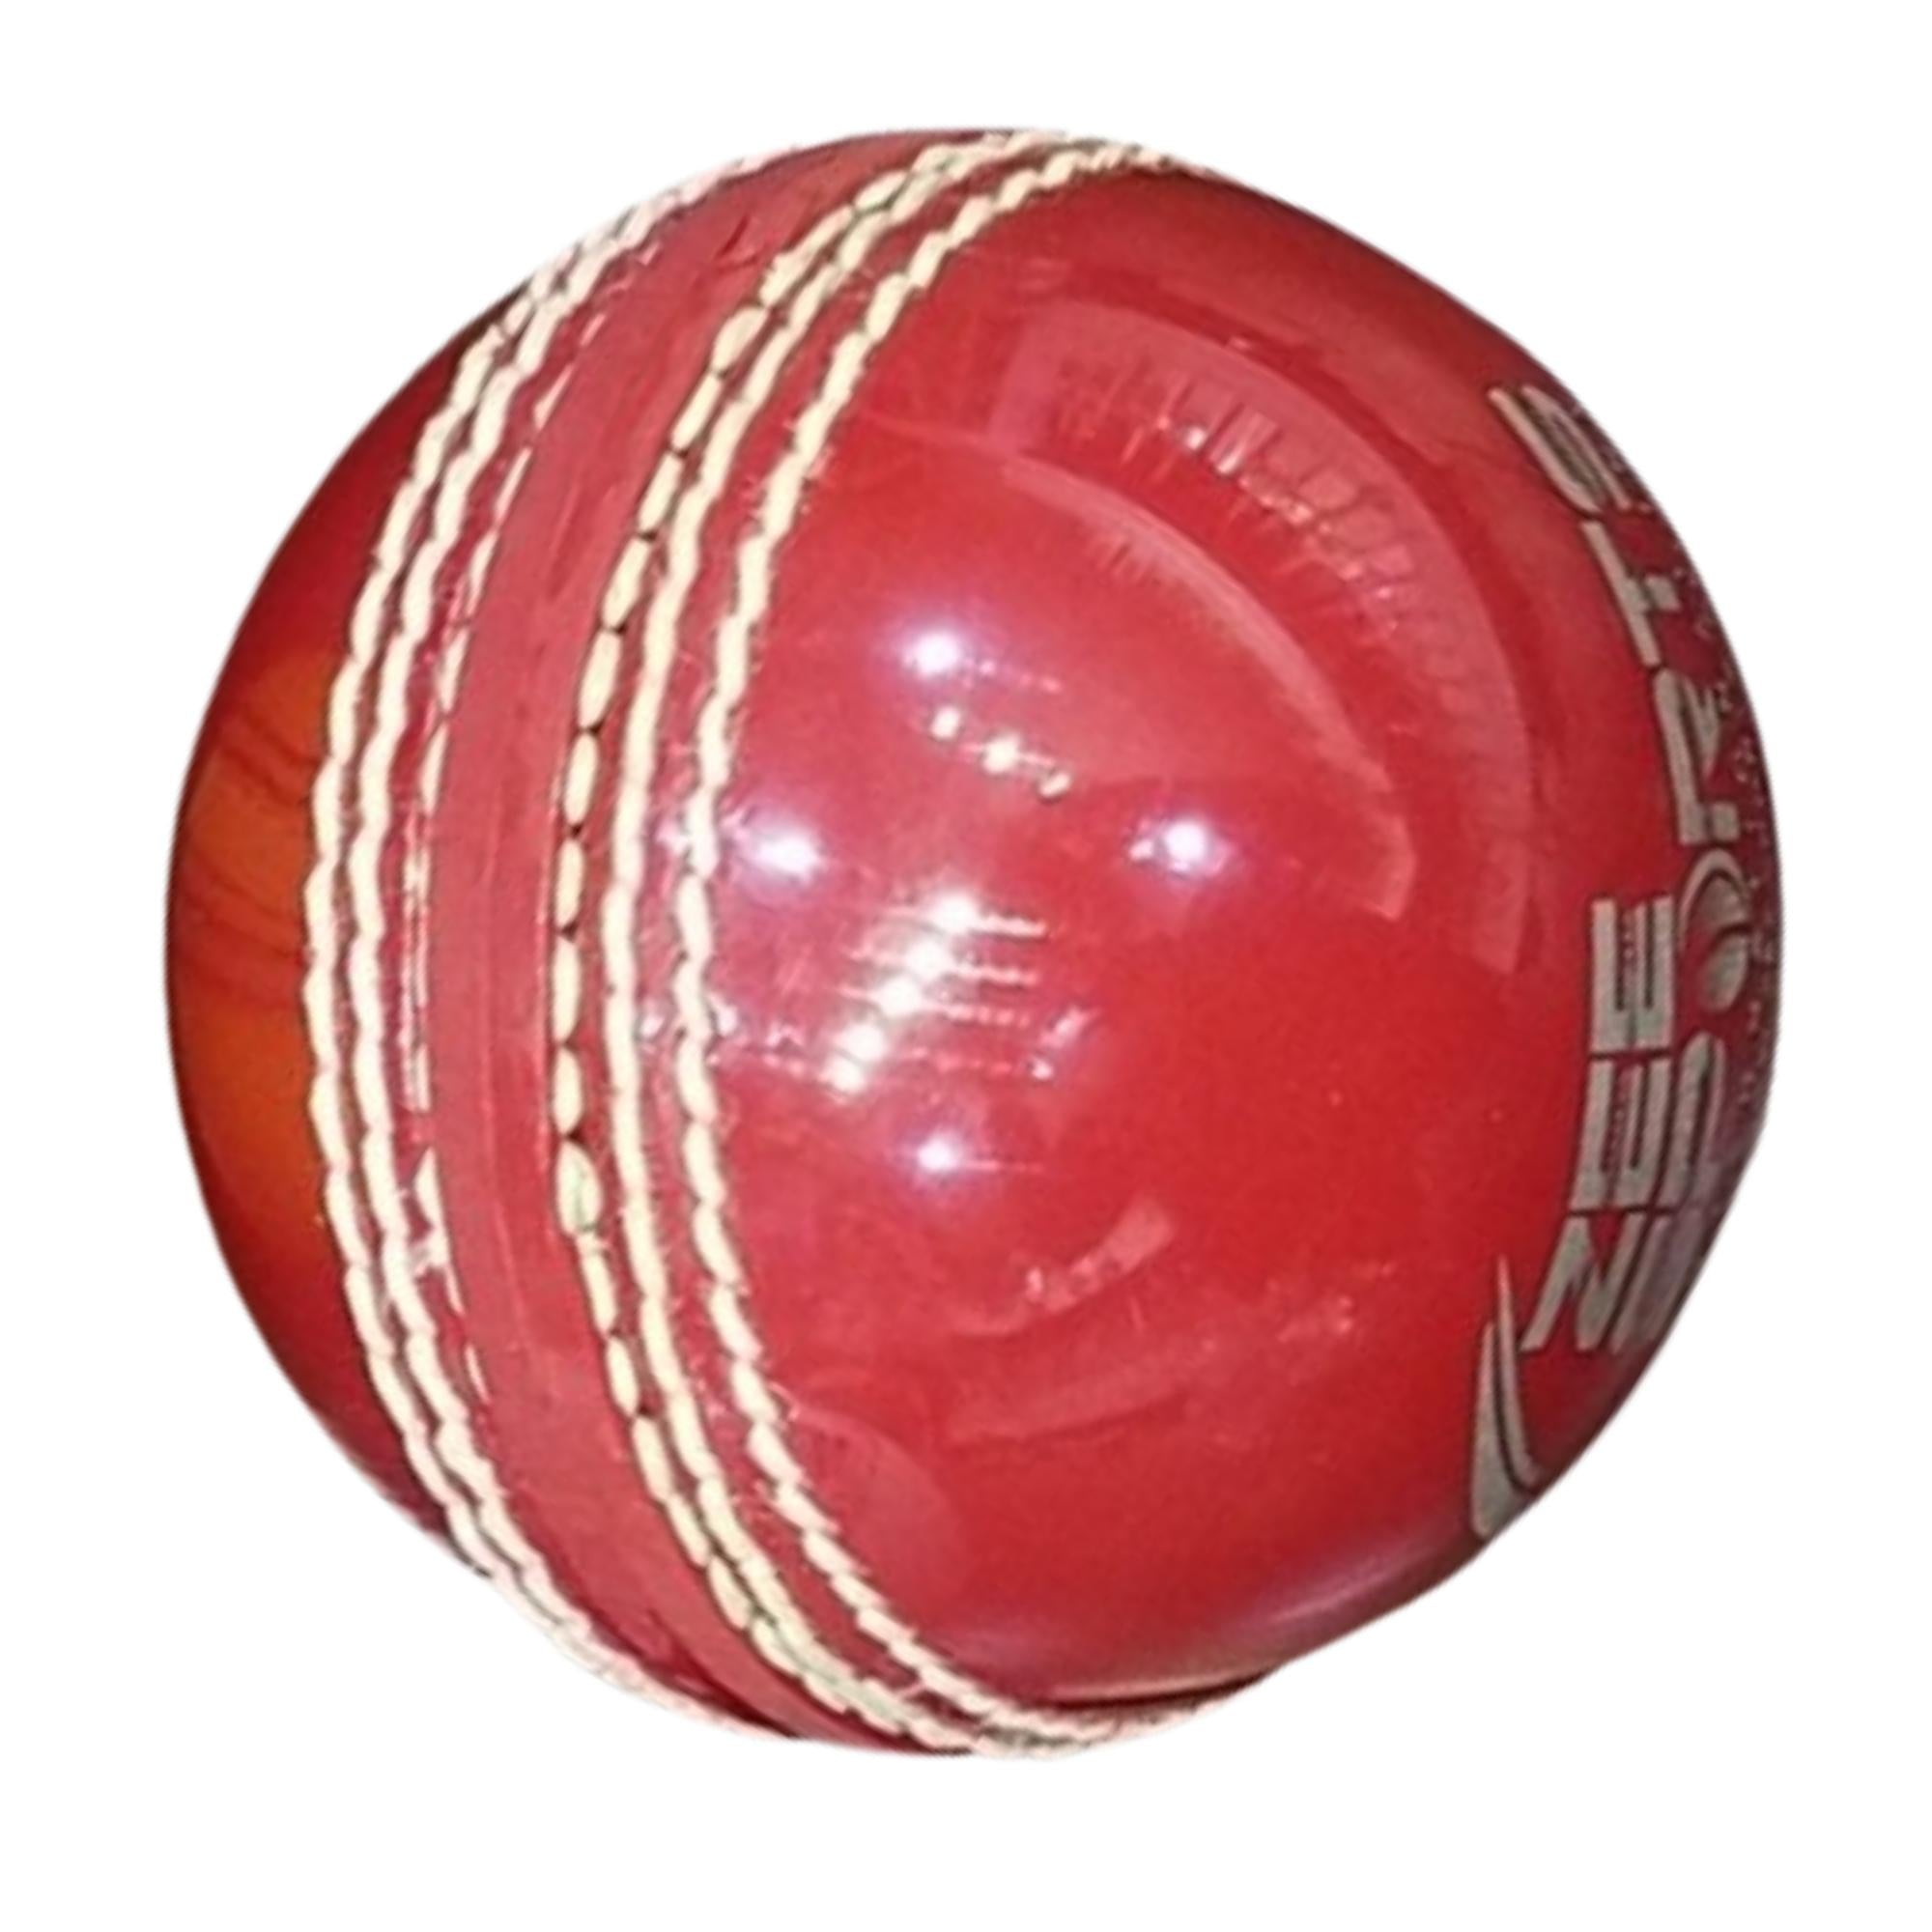 Zee Sports Vinyl / Pvc Cricket Balls